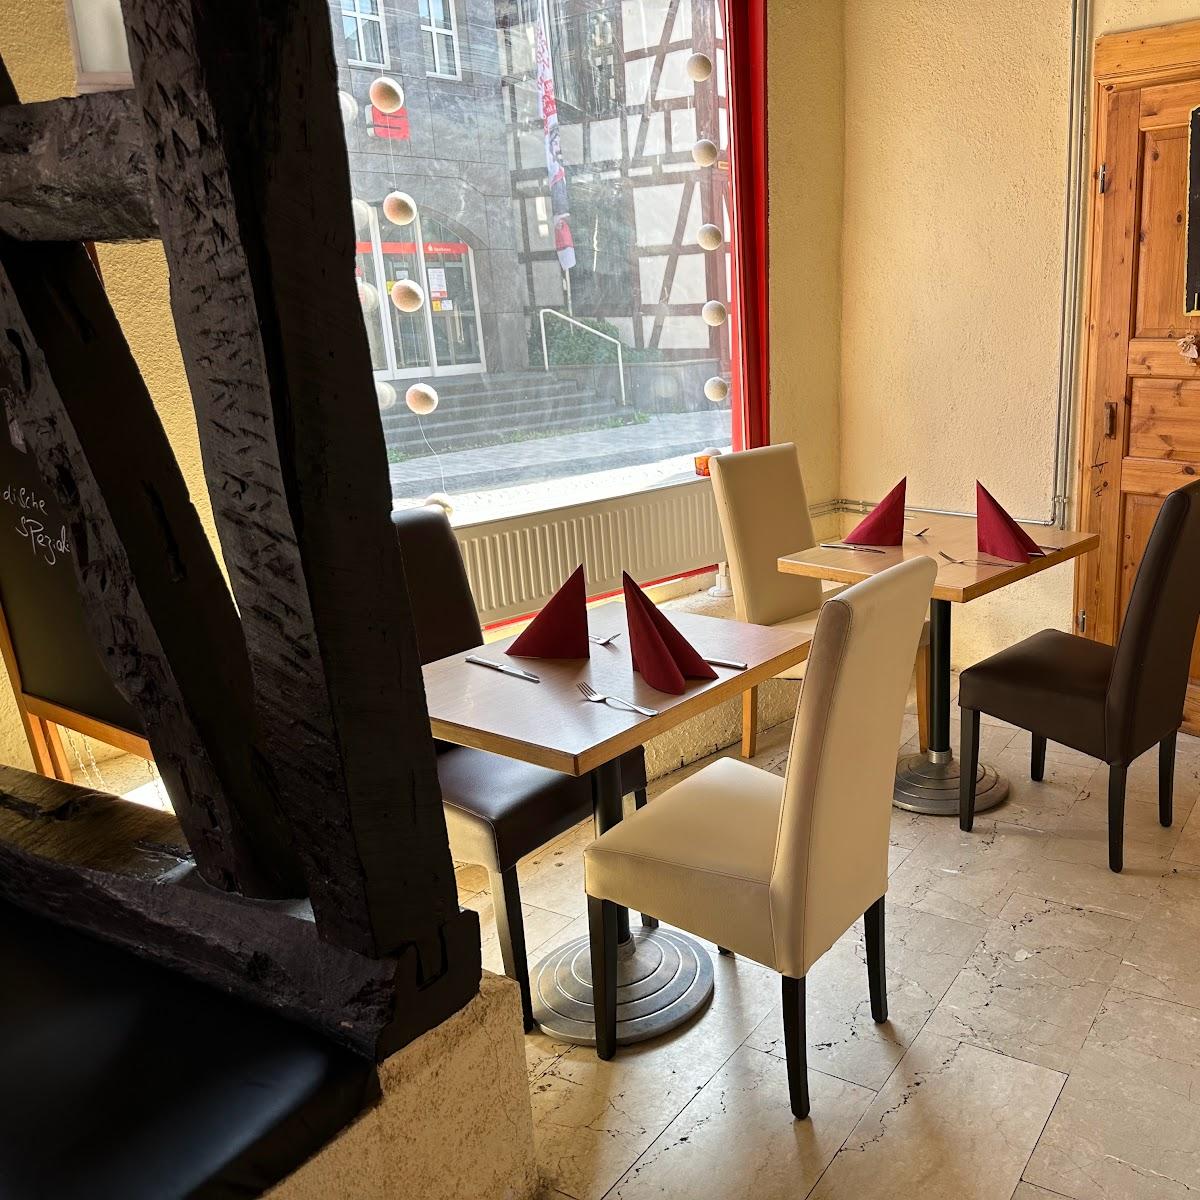 Restaurant "Masala darbar" in Schotten